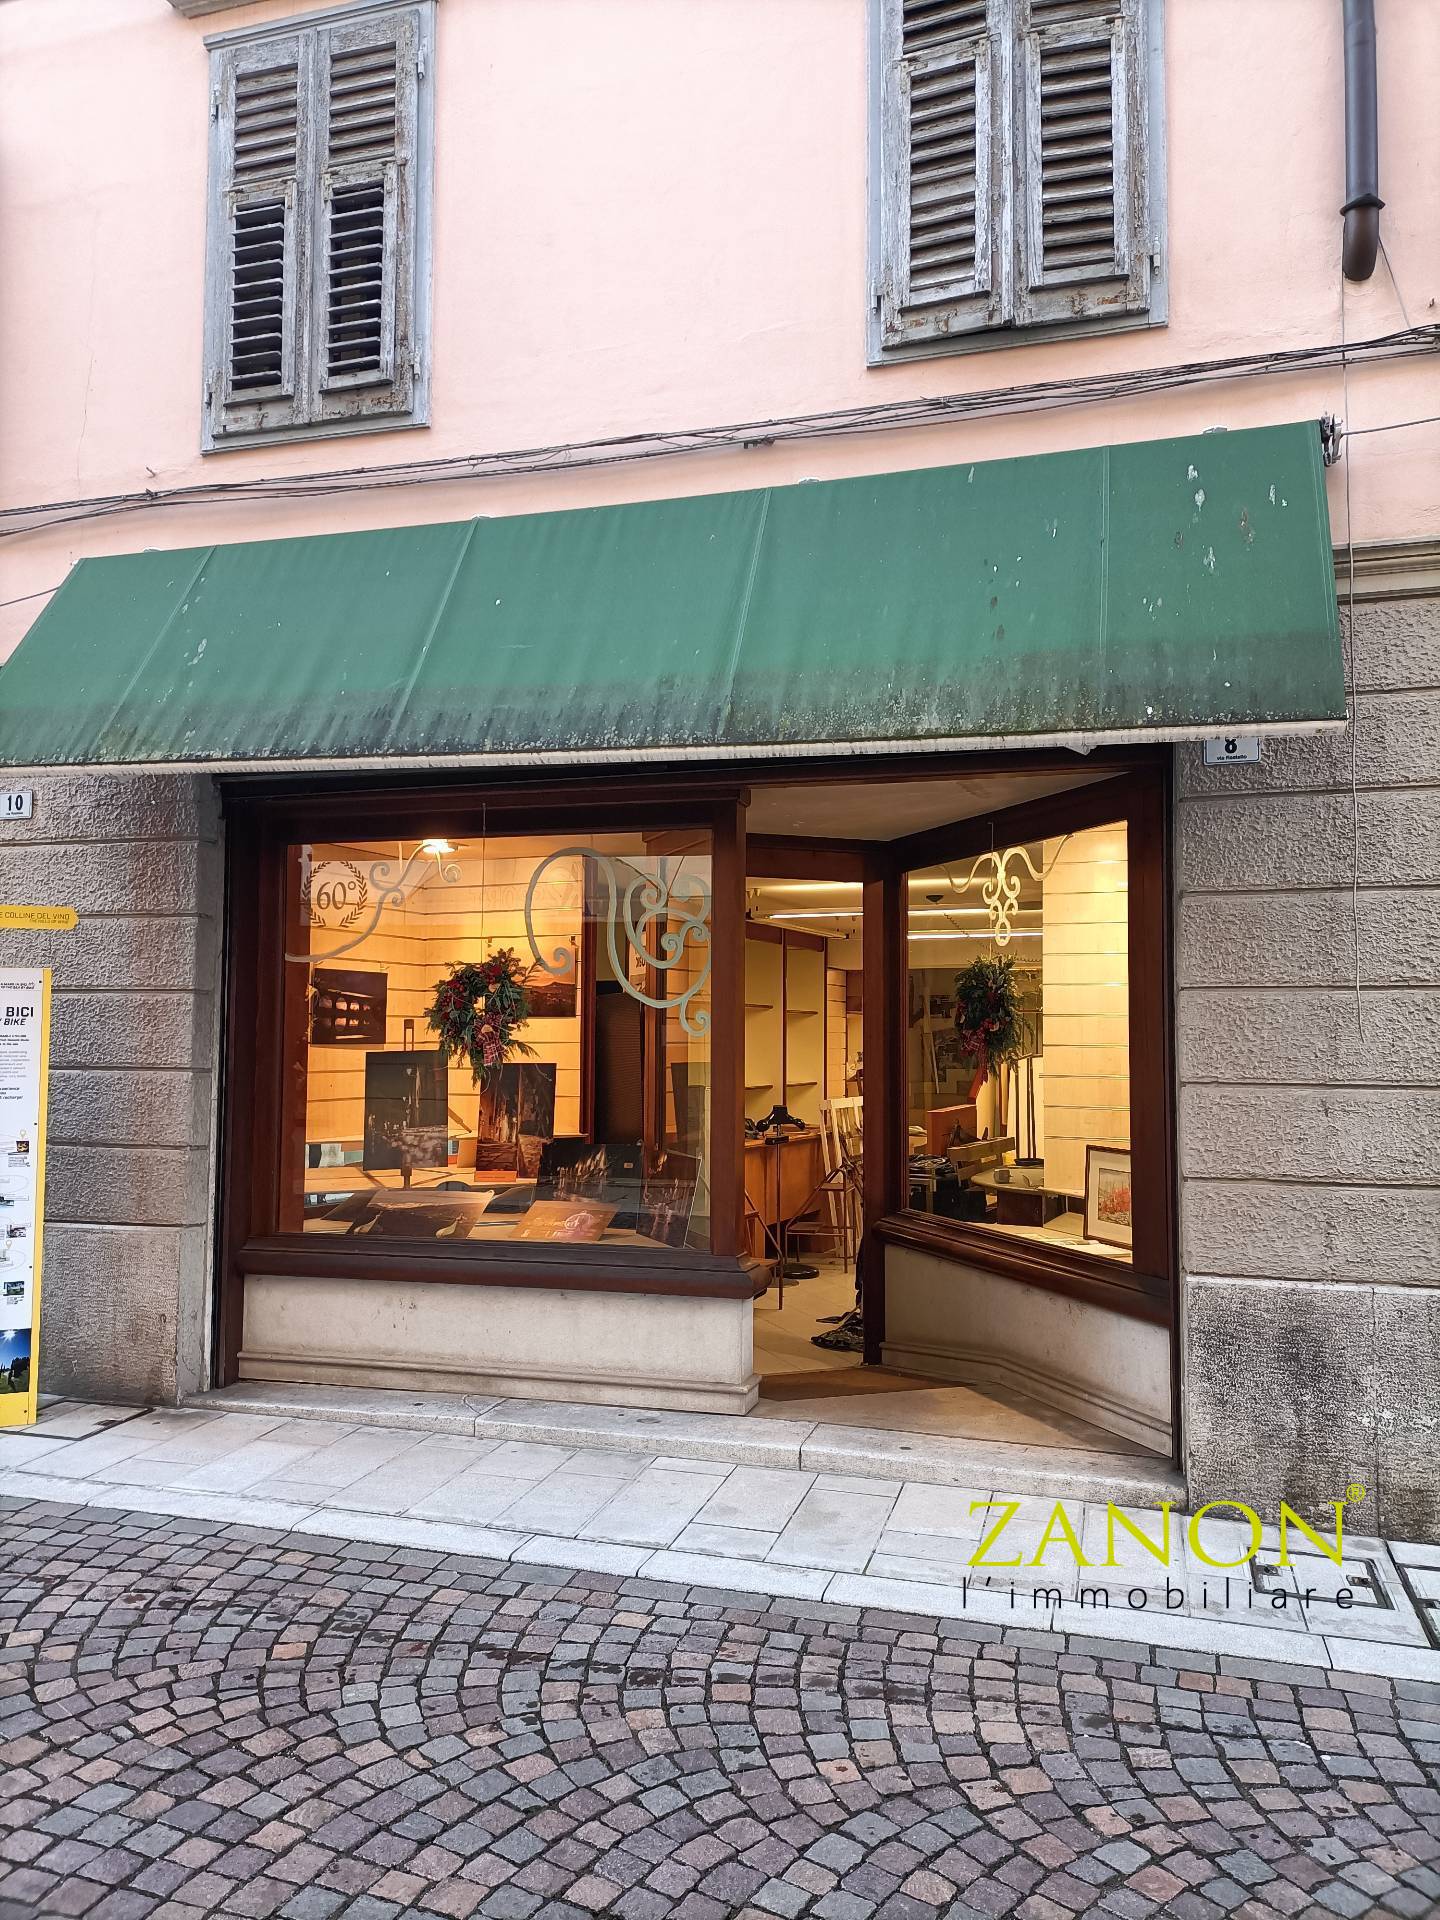 Locale commerciale in vendita, Gorizia centro storico